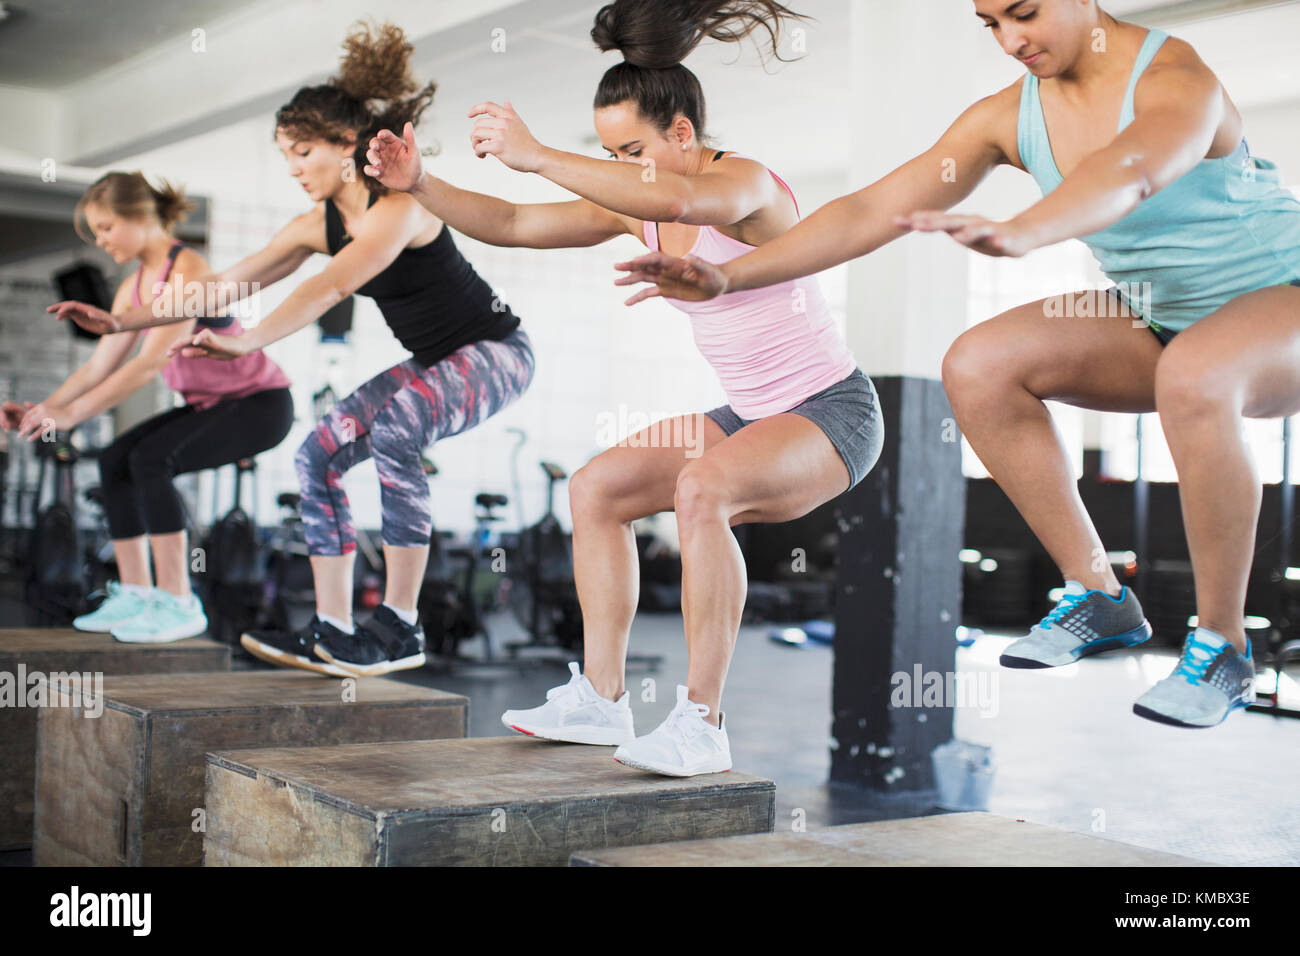 Entschlossene Frauen tun Sprung hockt auf Boxen in Übung Klasse Stockfoto